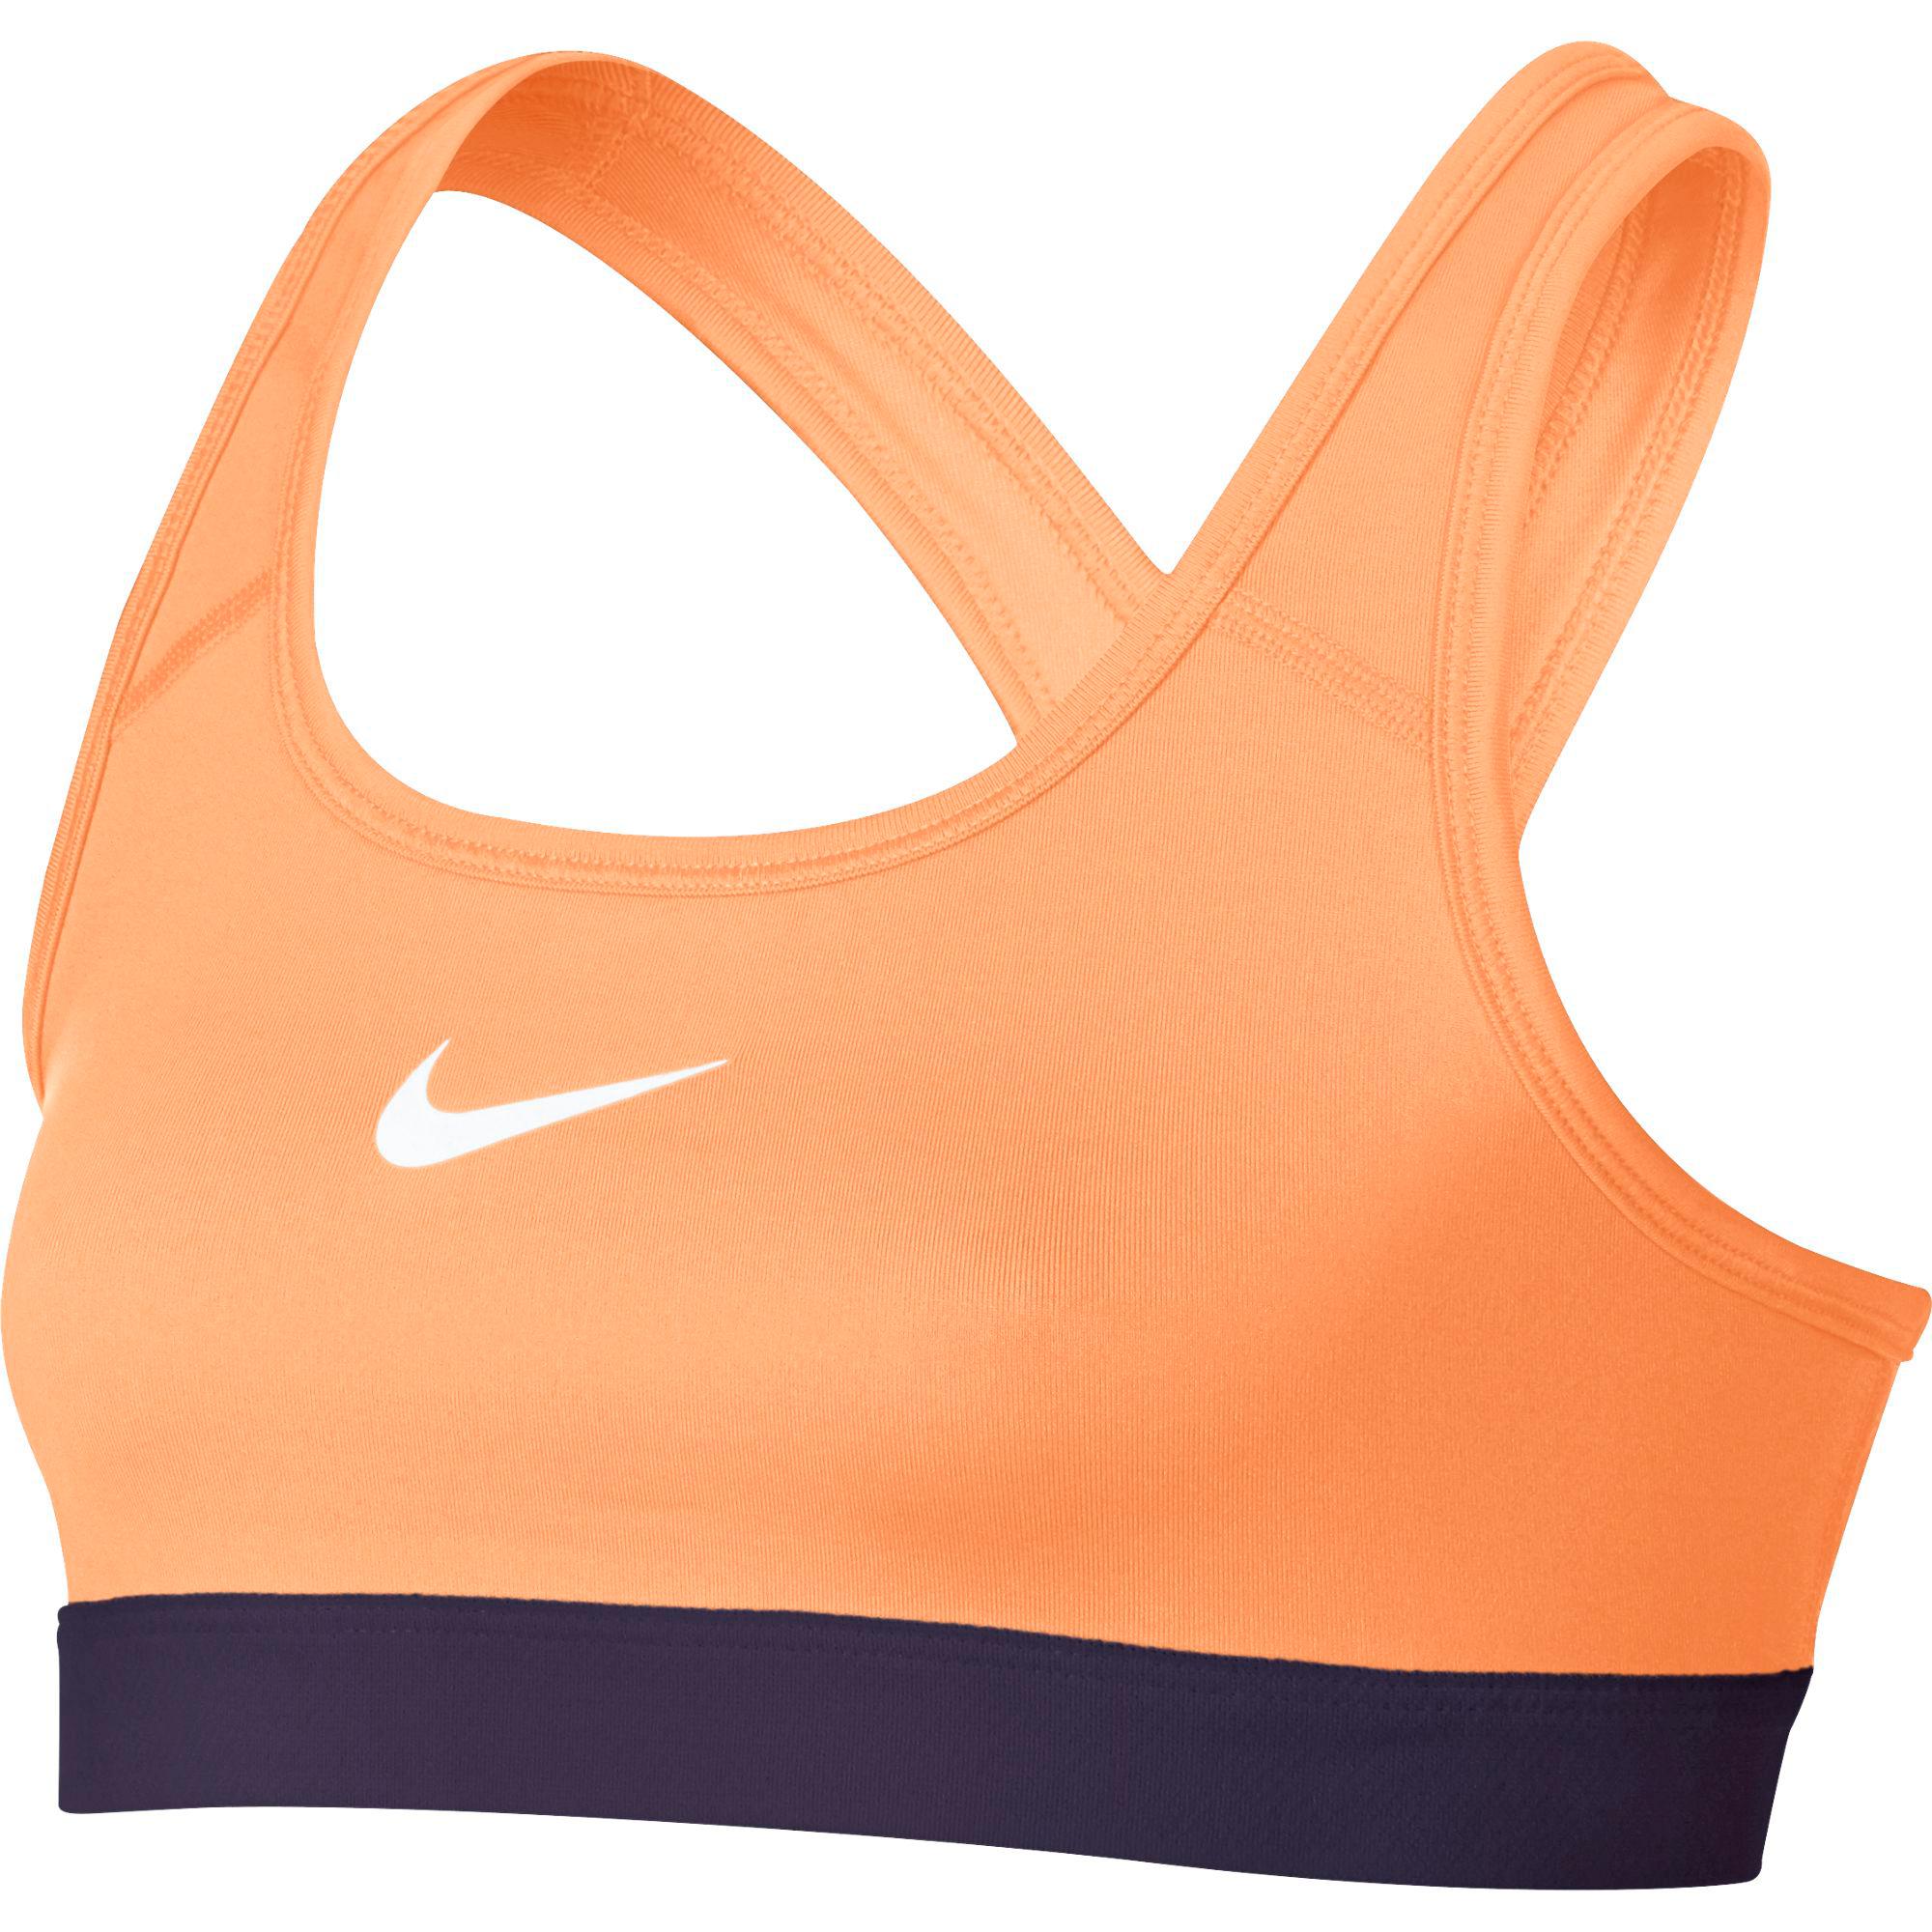 Nike Girls Pro Sports Bra - Peach/Purple - Tennisnuts.com